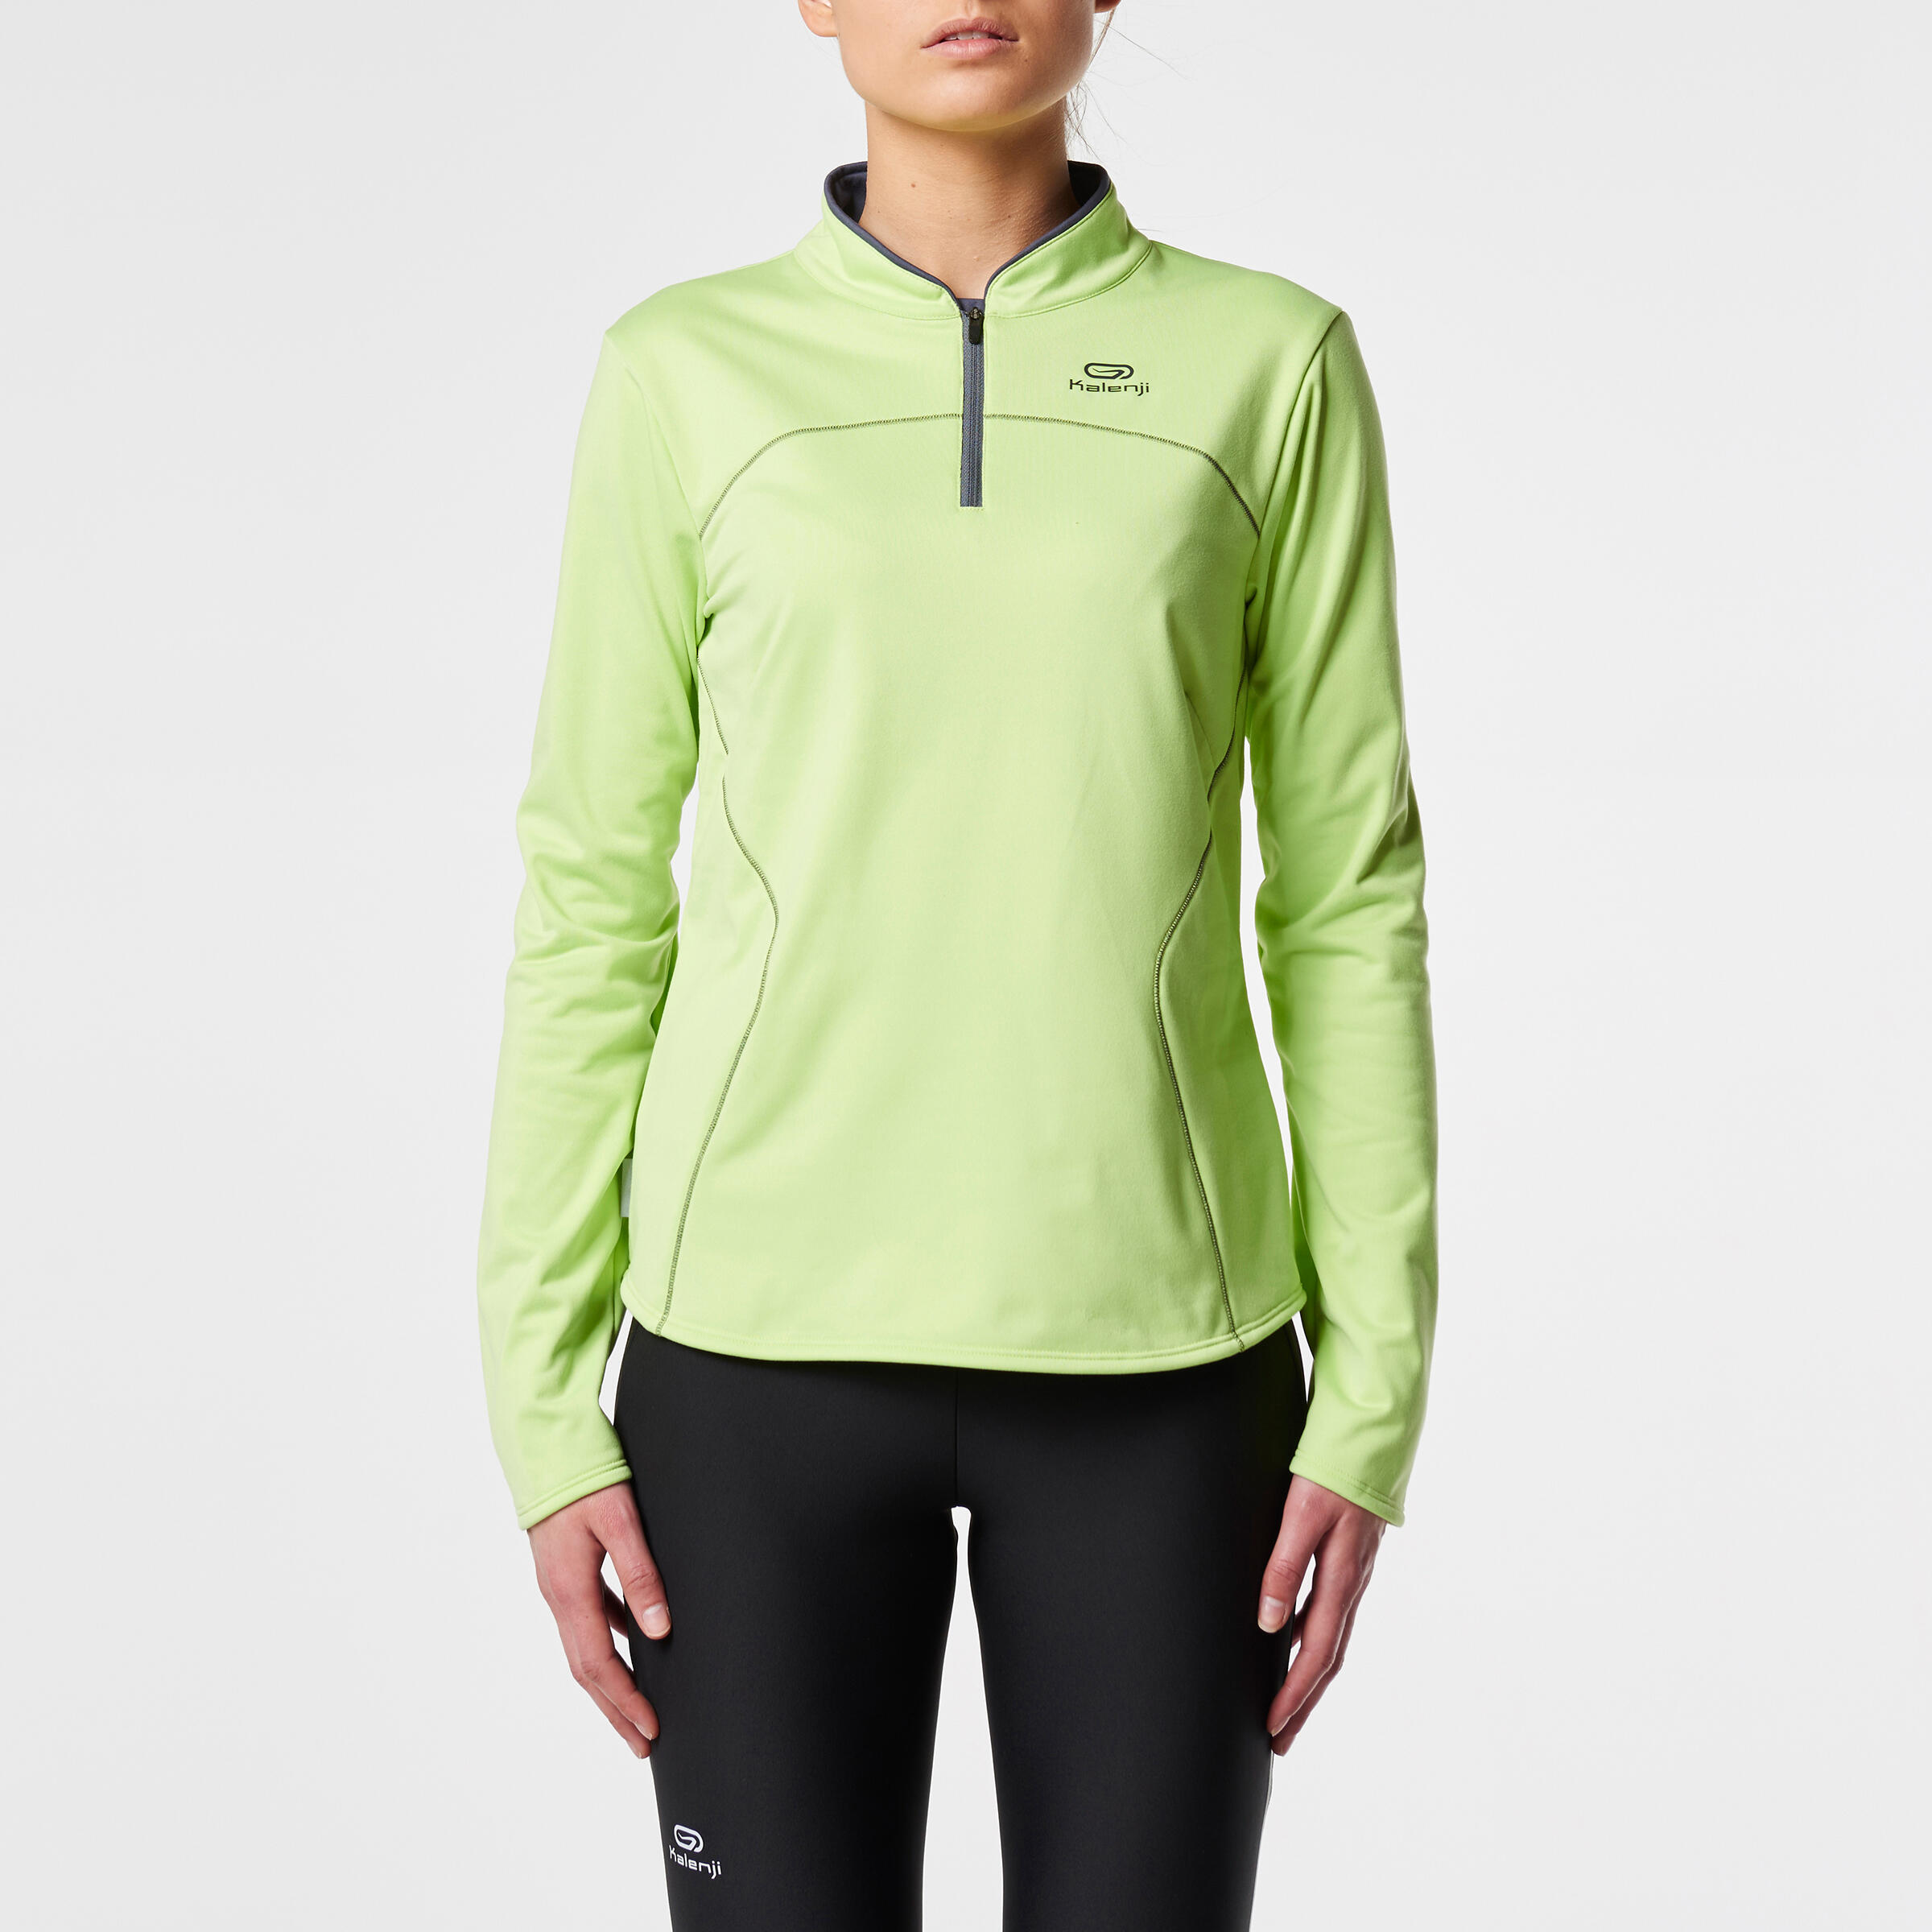 Ekiden Women's Warm Long Sleeved Running Jersey - Green 2/11